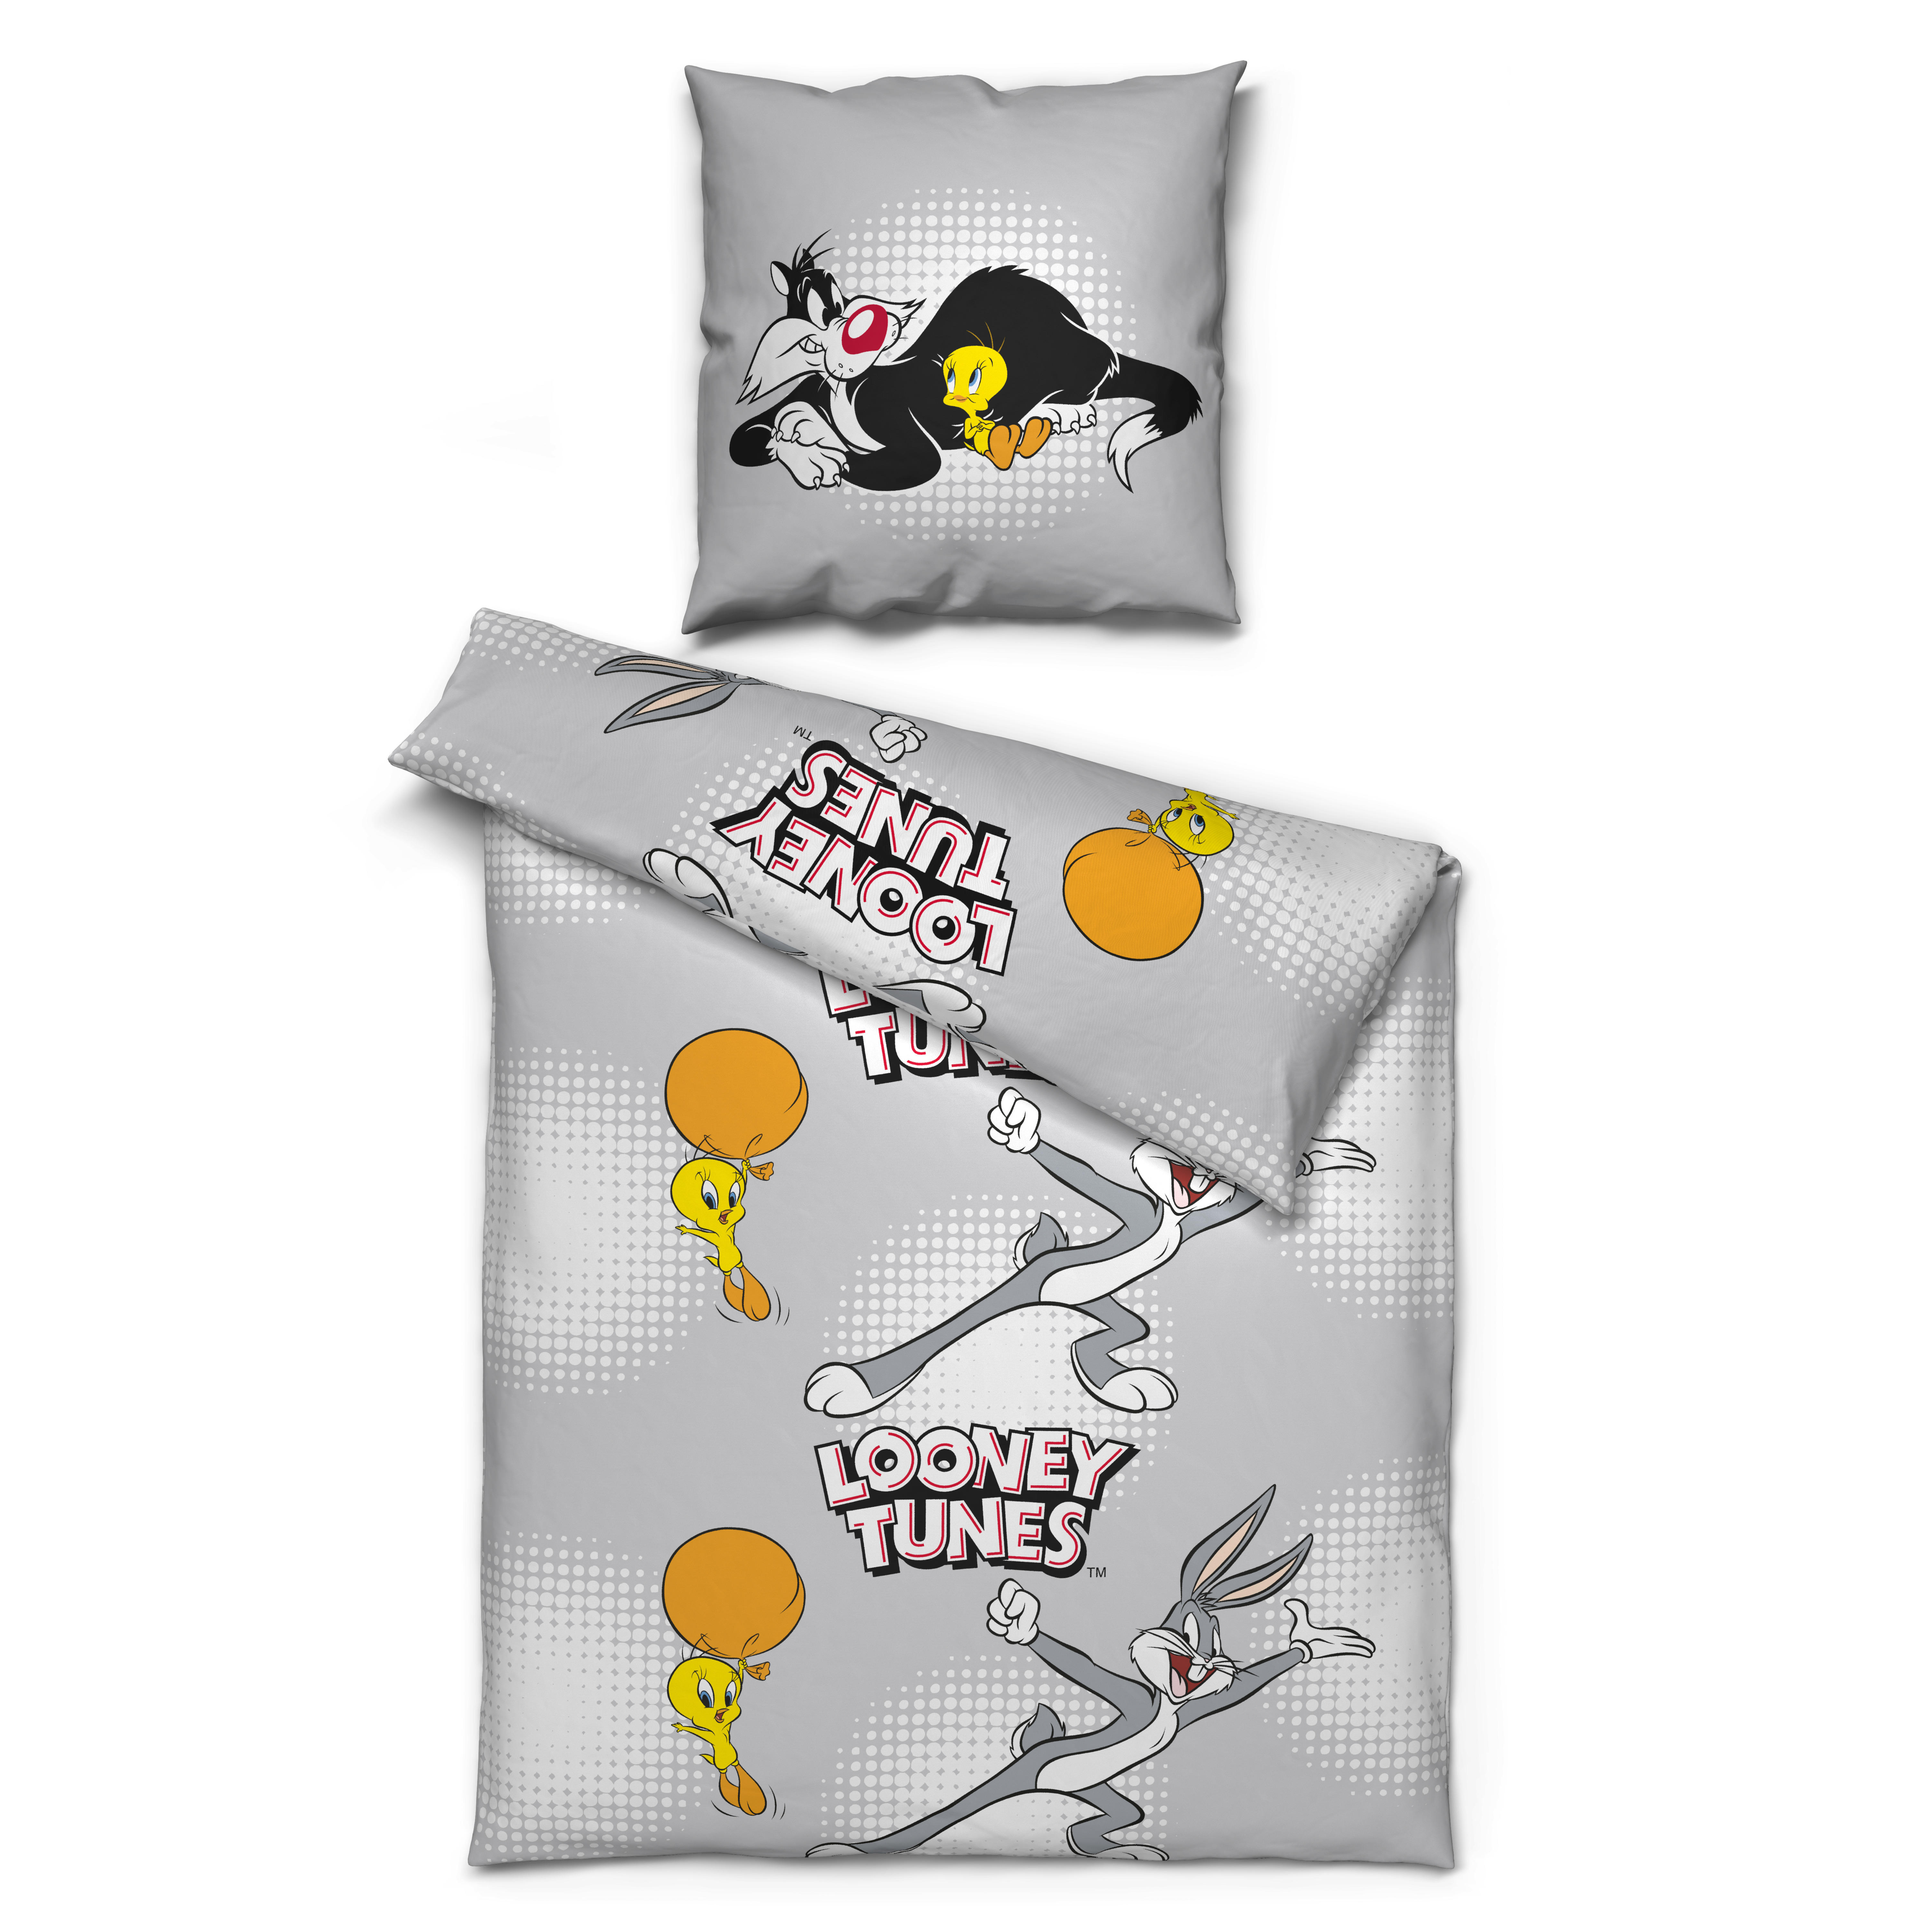 Microfaser Bettwäsche Looney Tunes Looney Tunes - gelb/schwarz (135,00/200,00cm)